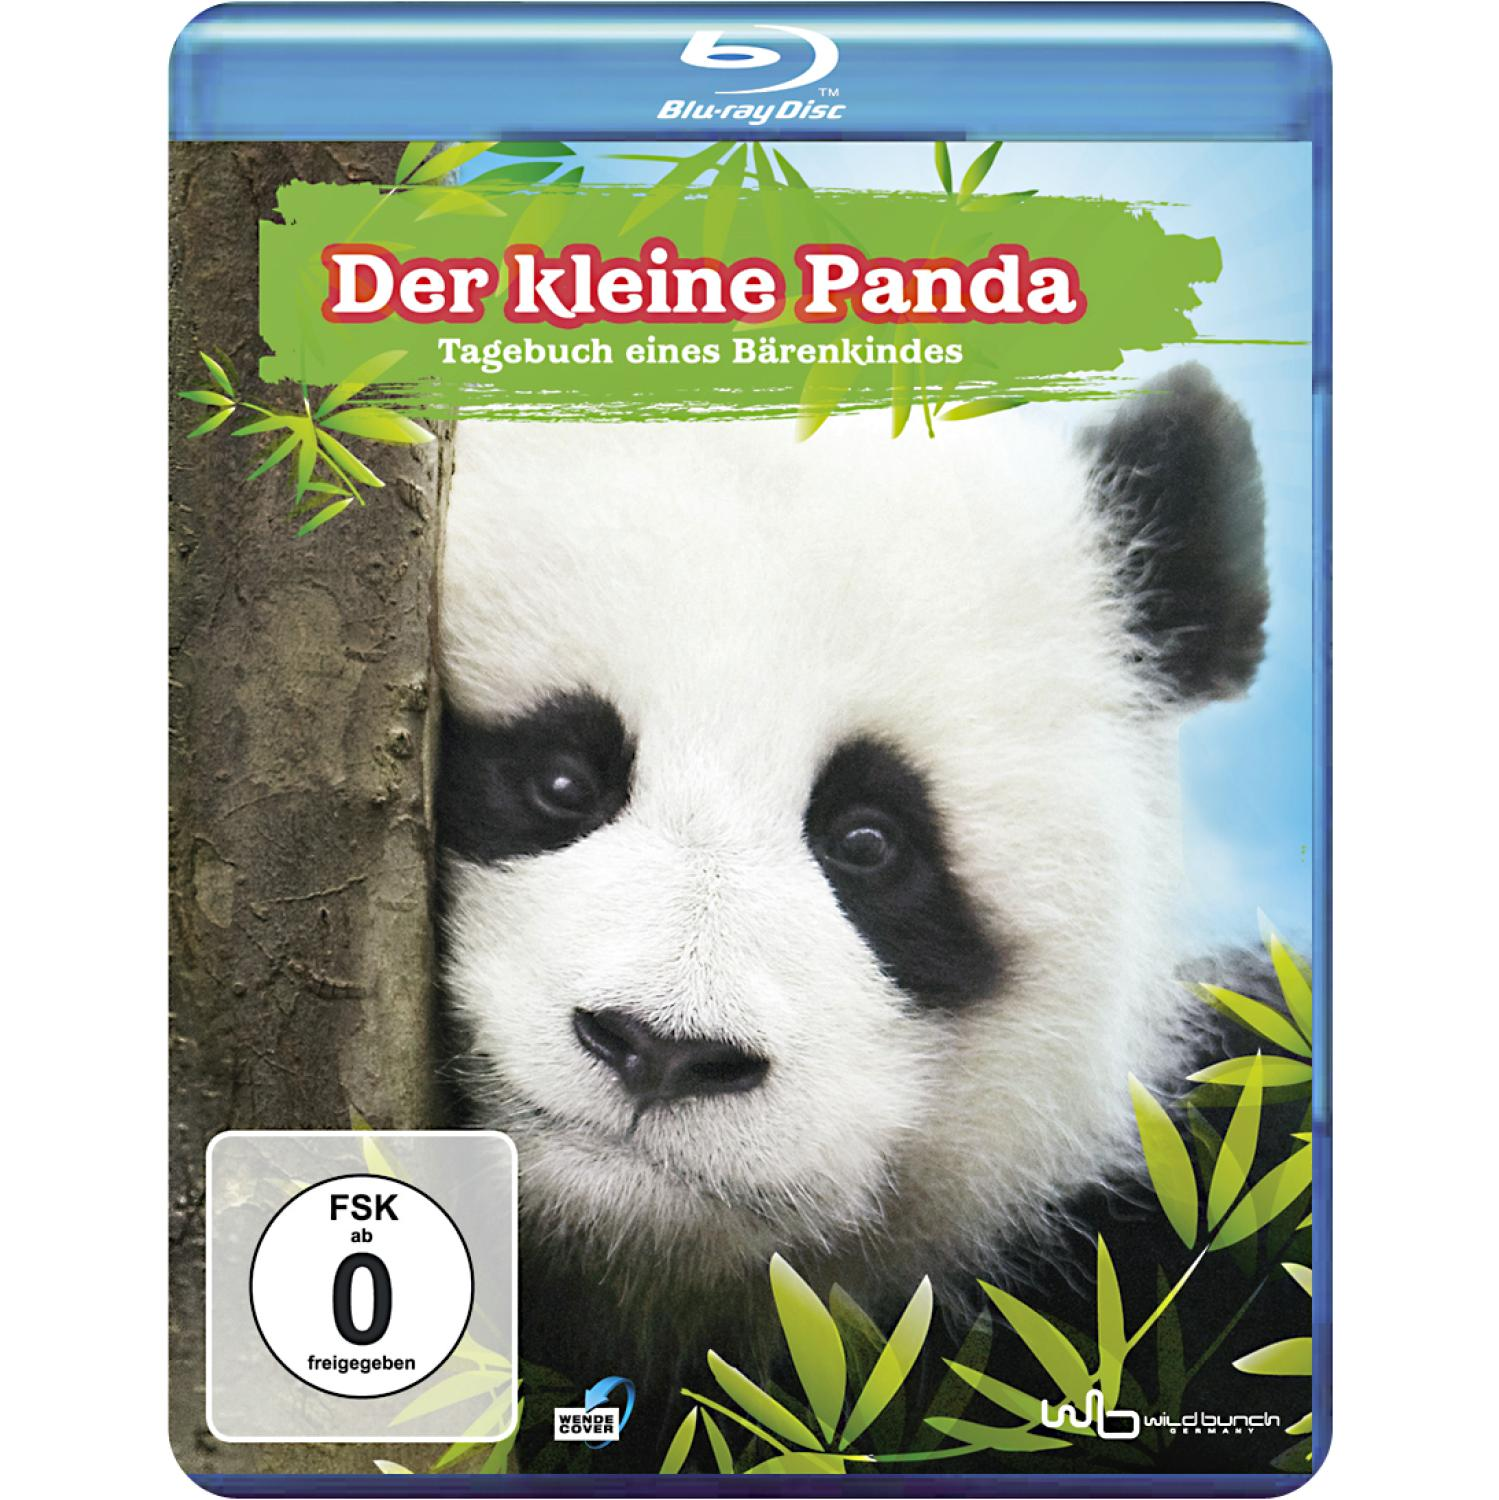 Der kleine Panda - Tagebuch Blu-ray Bärenkindes eines